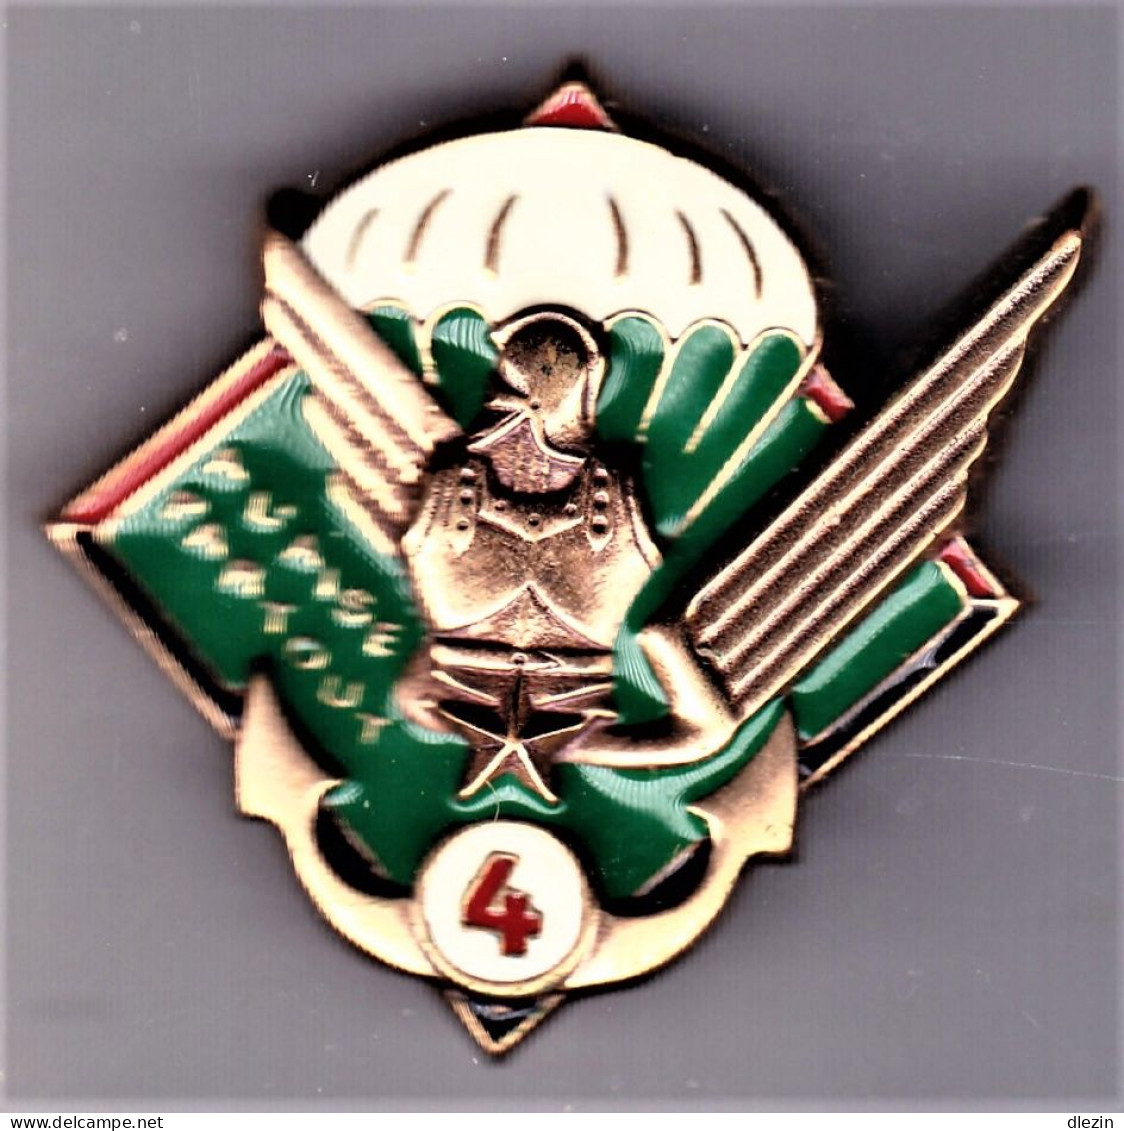 17° RGP/ 4° Cie. 17° Régiment Du Génie Parachutiste/ 4° Compagnie. SM.Leblond. - Armée De Terre